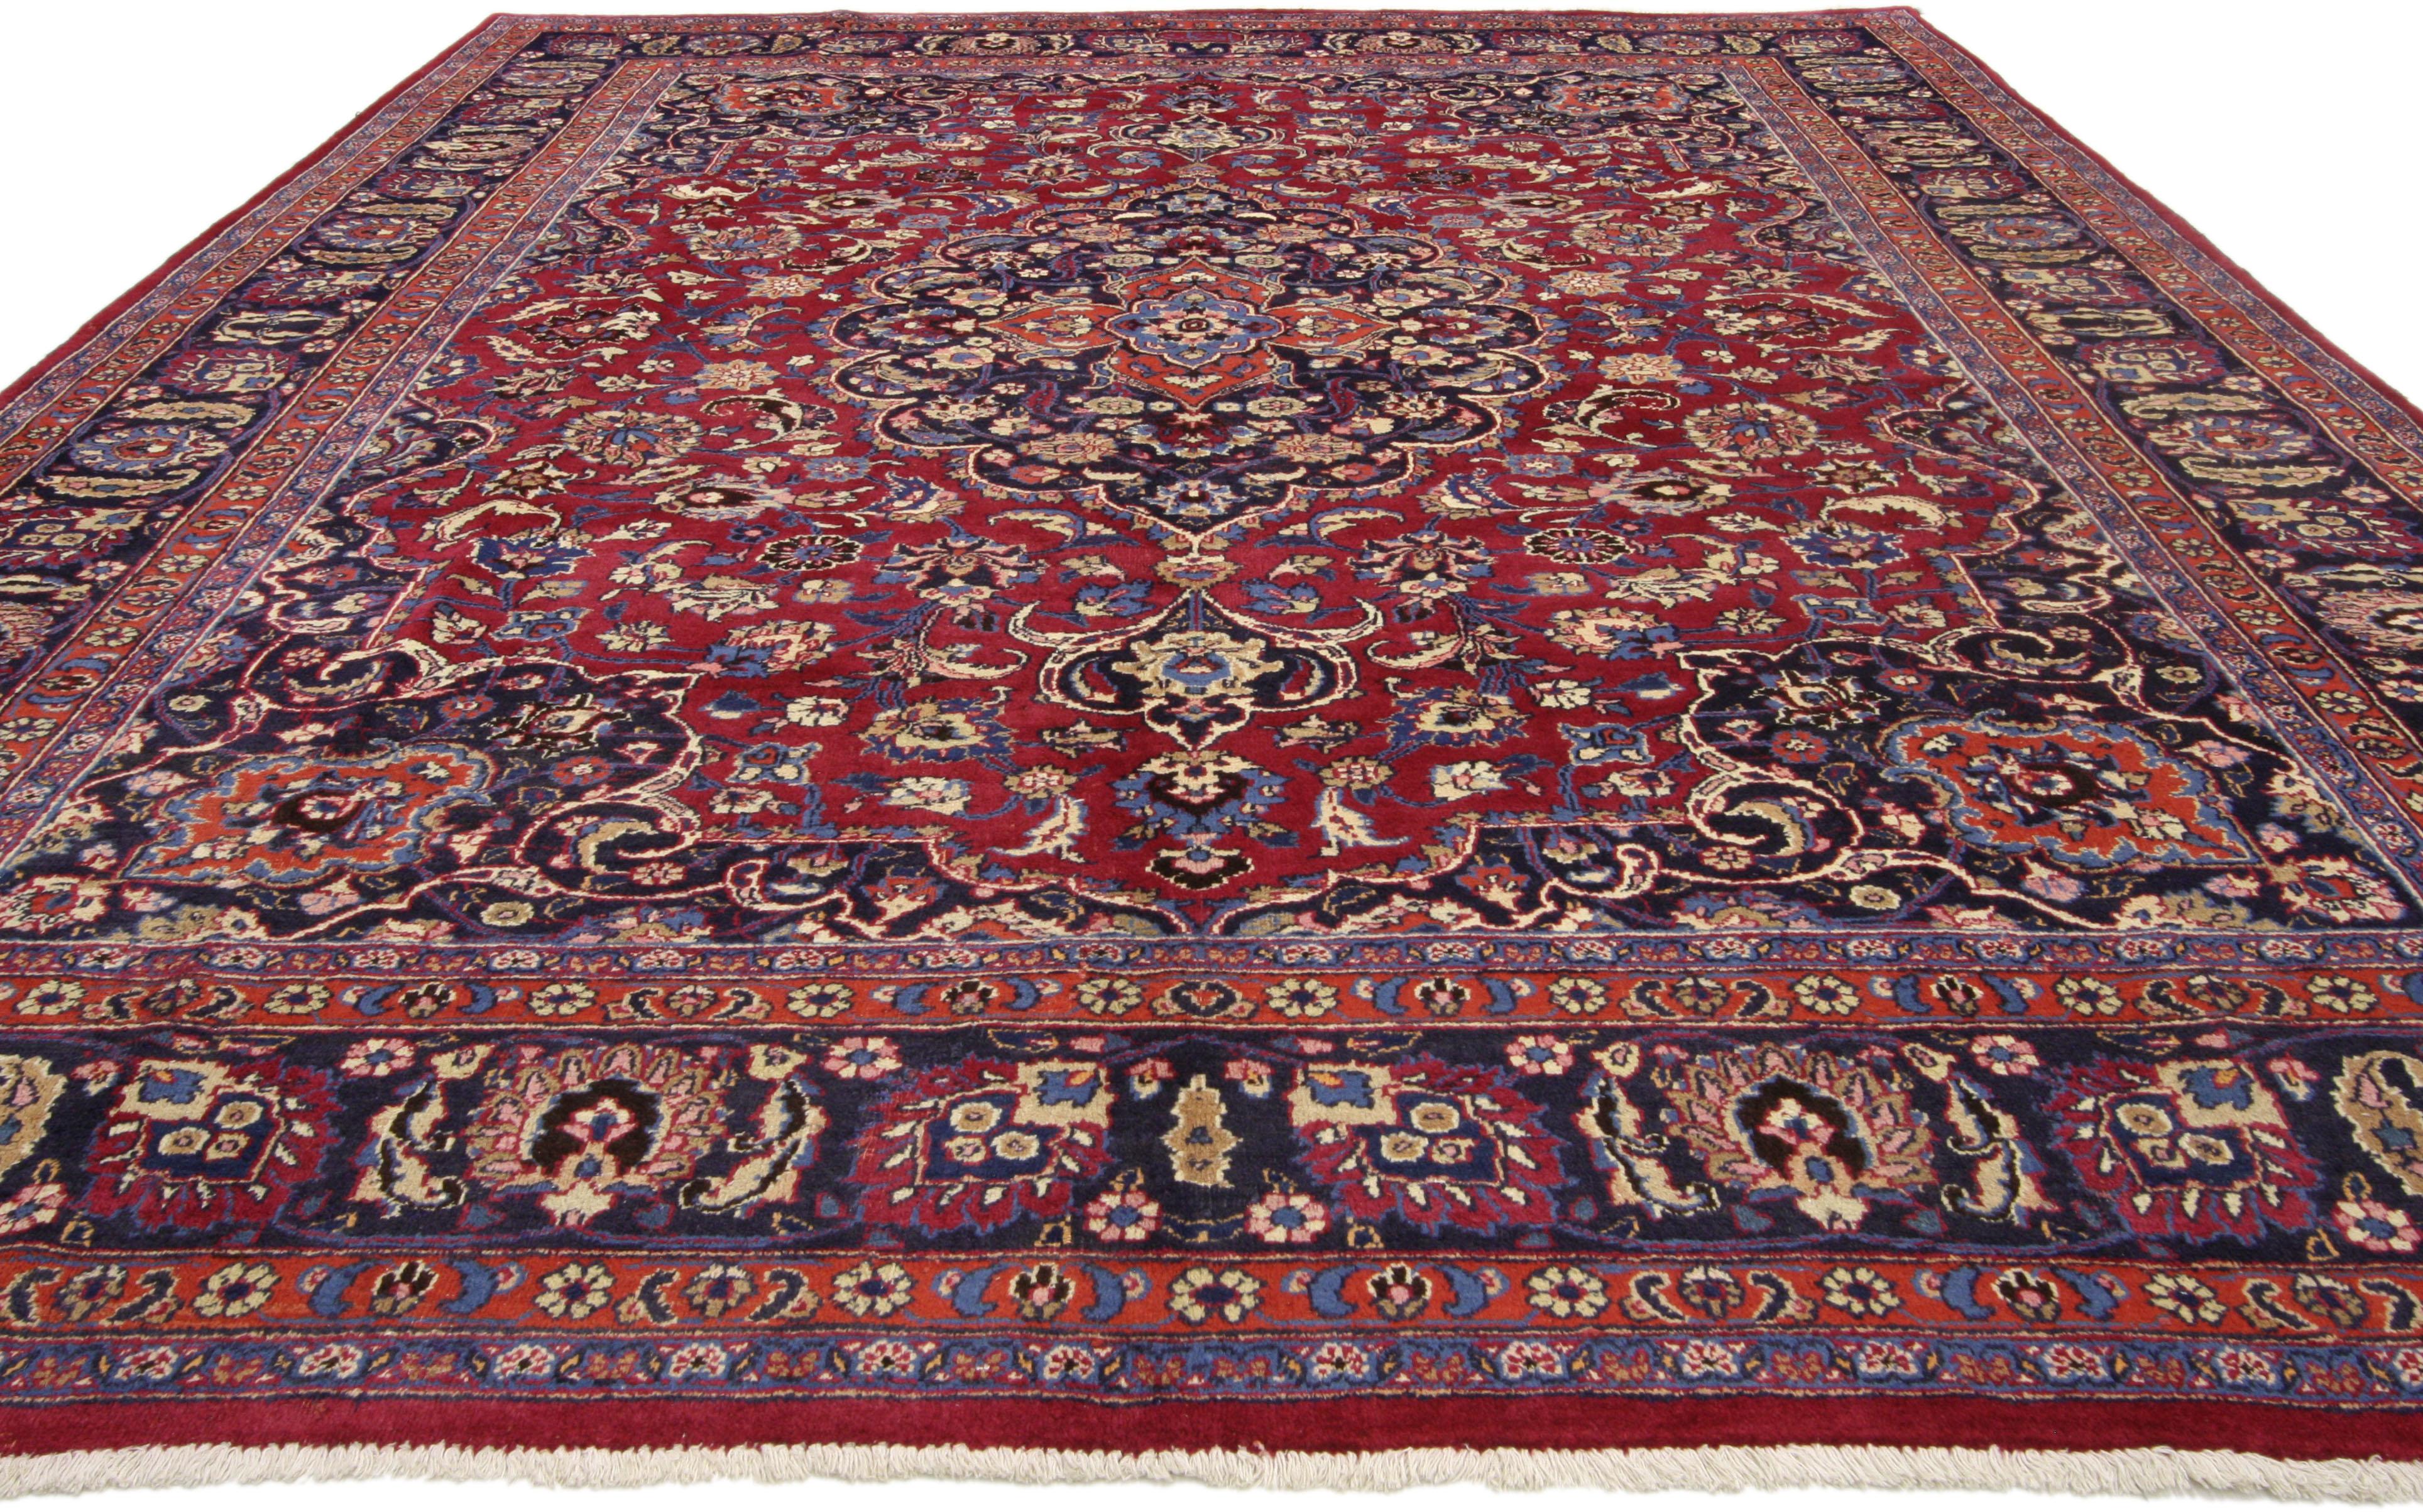 79669 Tapis Persan Vintage Mashhad avec style Arabesque Baroque Régence. Ce tapis persan vintage Mashhad en laine nouée à la main présente un médaillon Mashhad à 16 points dans un champ de palmettes, de feuilles dentelées et de fleurs épanouies. Le